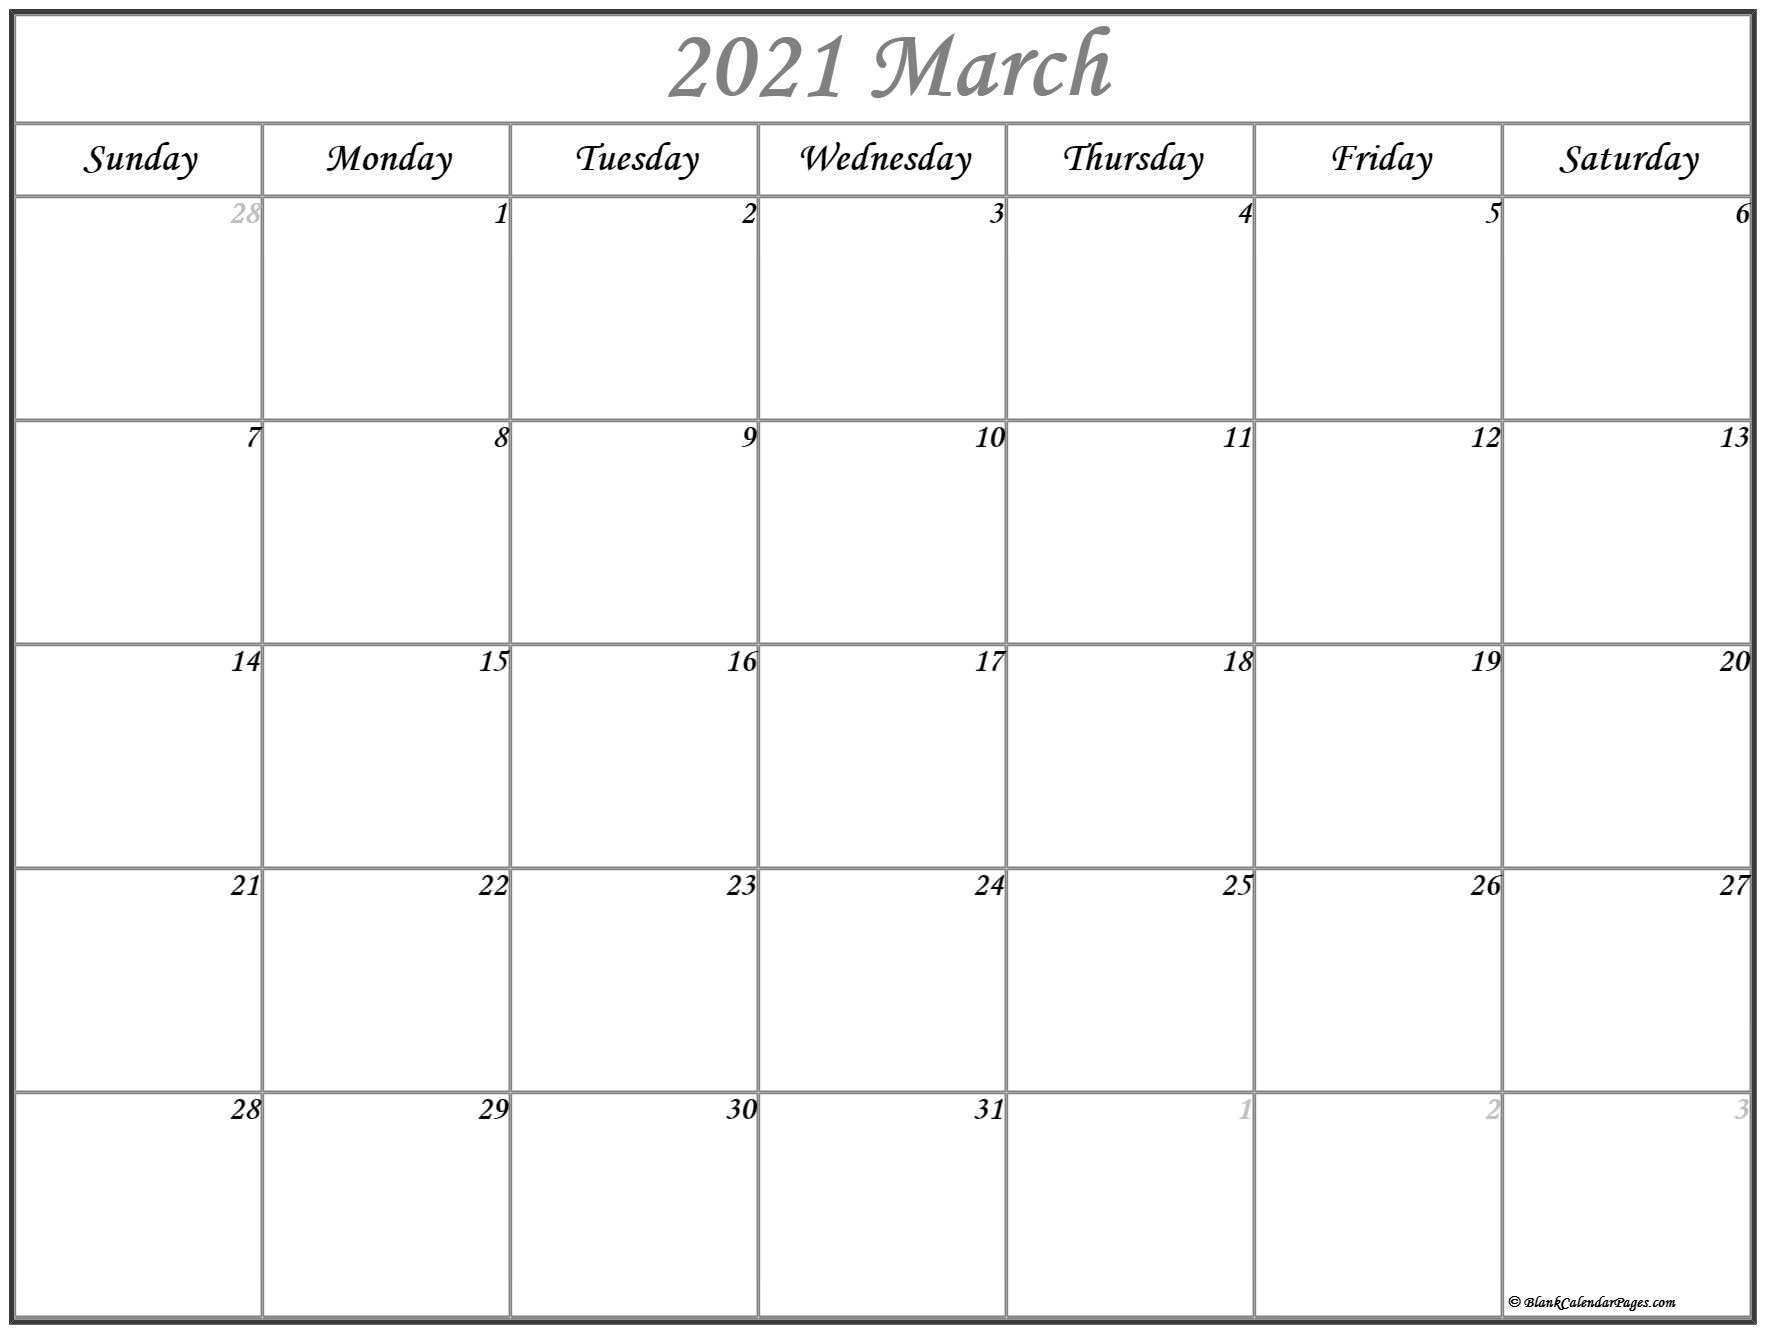 March 2021 Calendar | Free Printable Calendar Templates March To December 2021 Calendar